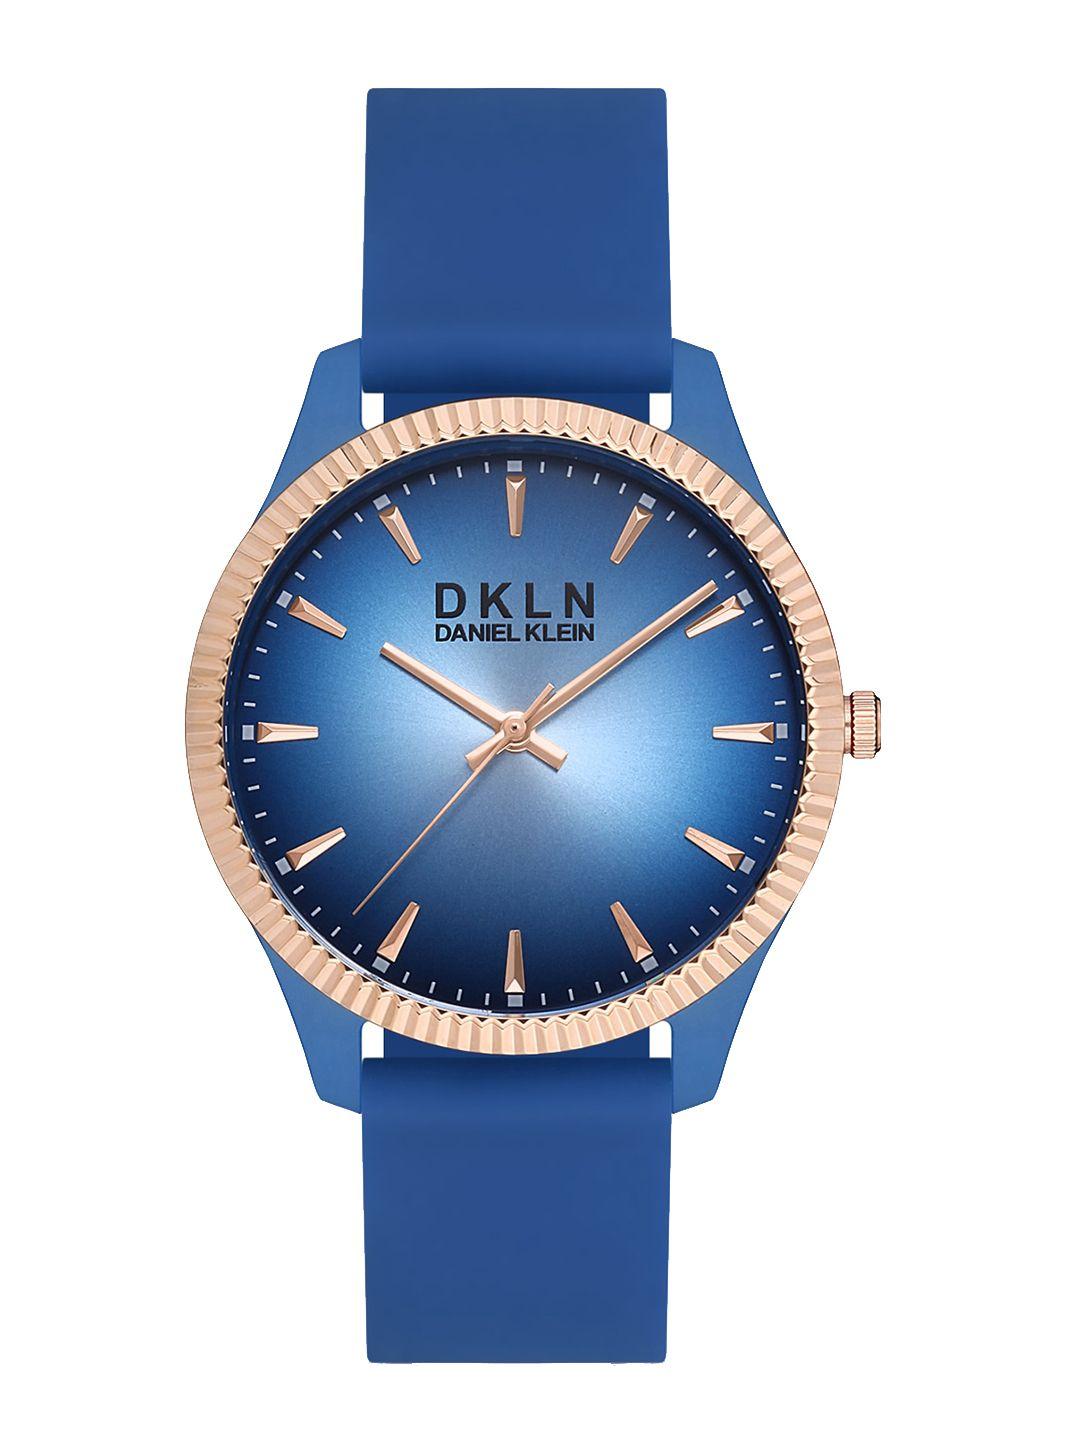 daniel-klein-men-printed-dial-&-blue-straps-analogue-watch-dk-1-12767-5